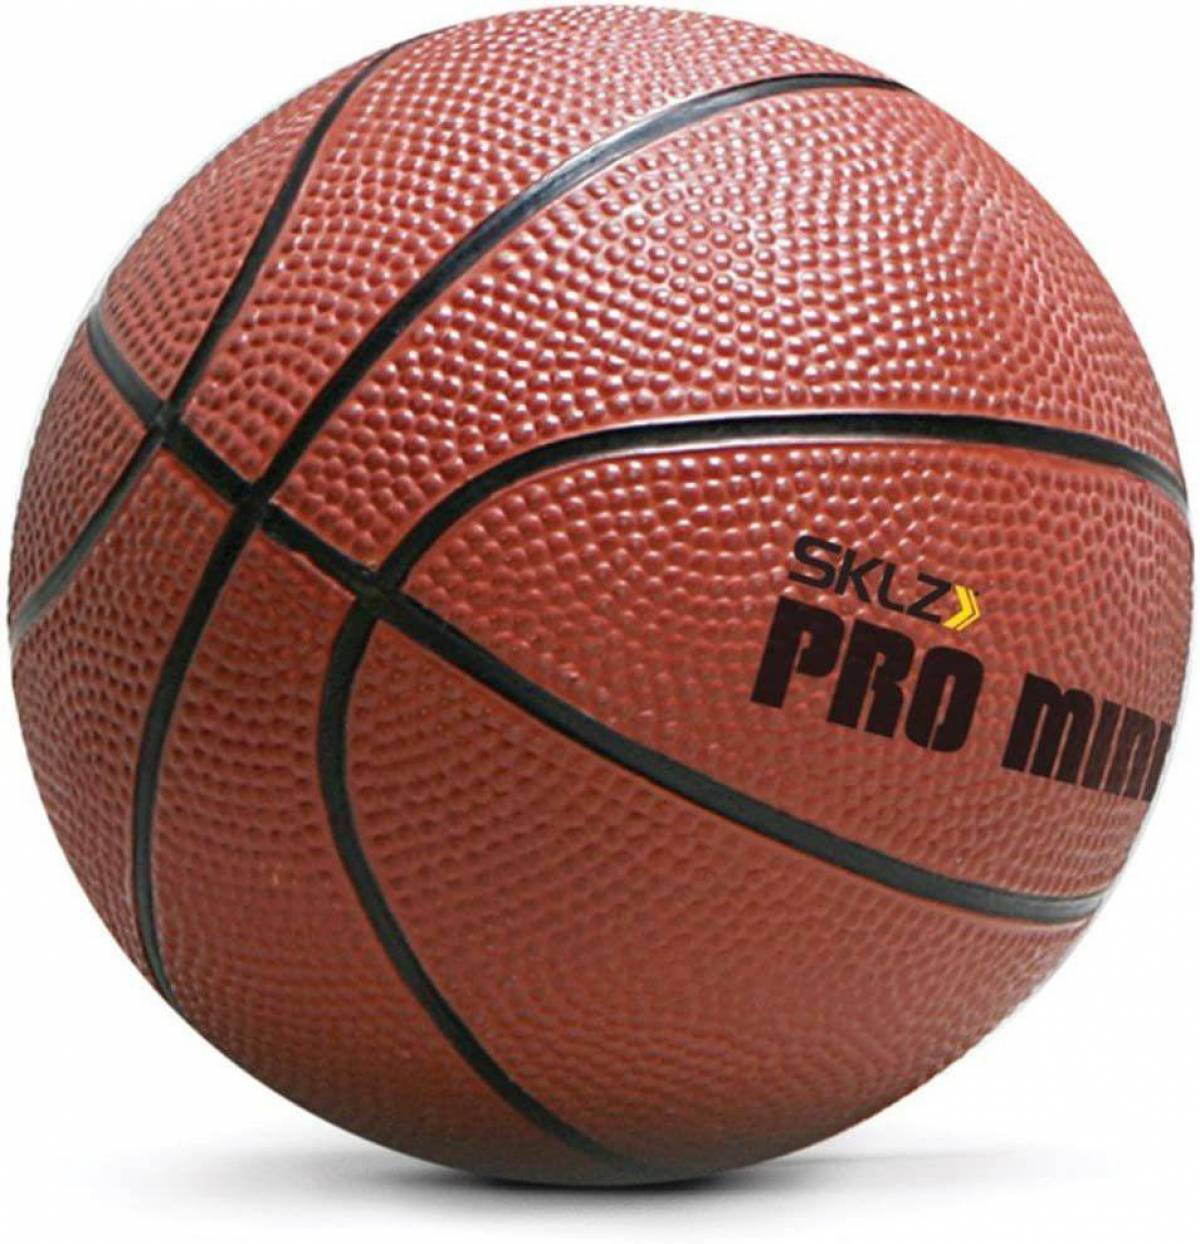 Спортивные магазины баскетбольные мячи. Мяч баскетбольный мини Баскет 5. Баскетбольный мяч lel Pro b200. Nice shoot мяч баскетбольный.